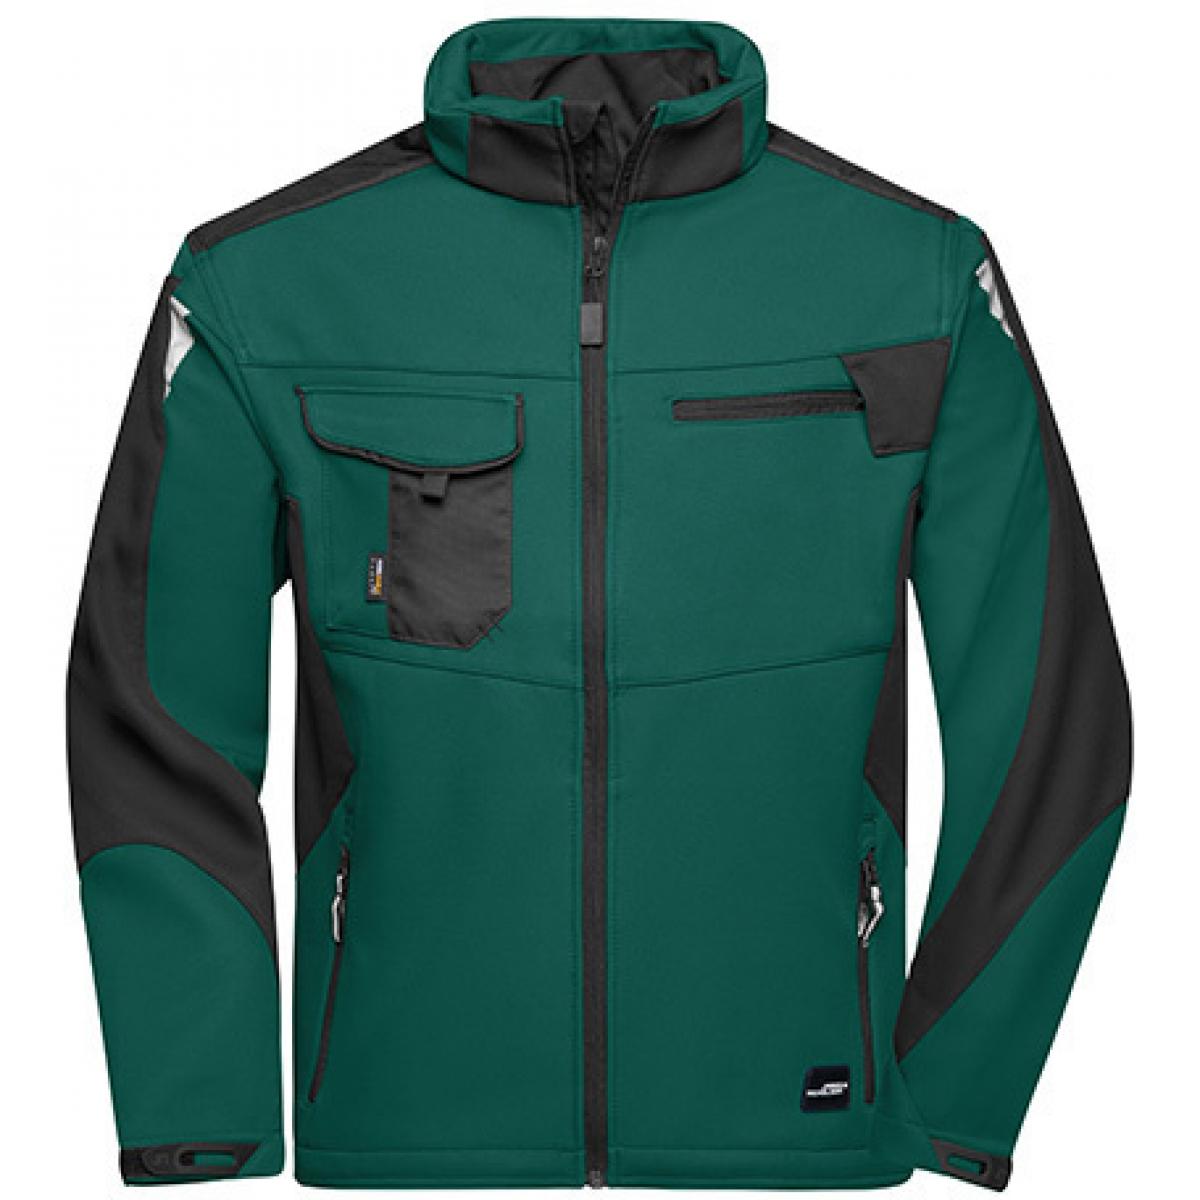 Hersteller: James+Nicholson Herstellernummer: JN844 Artikelbezeichnung: Herren Jacke, Workwear Softshell Jacket -STRONG- Farbe: Dark Green/Black